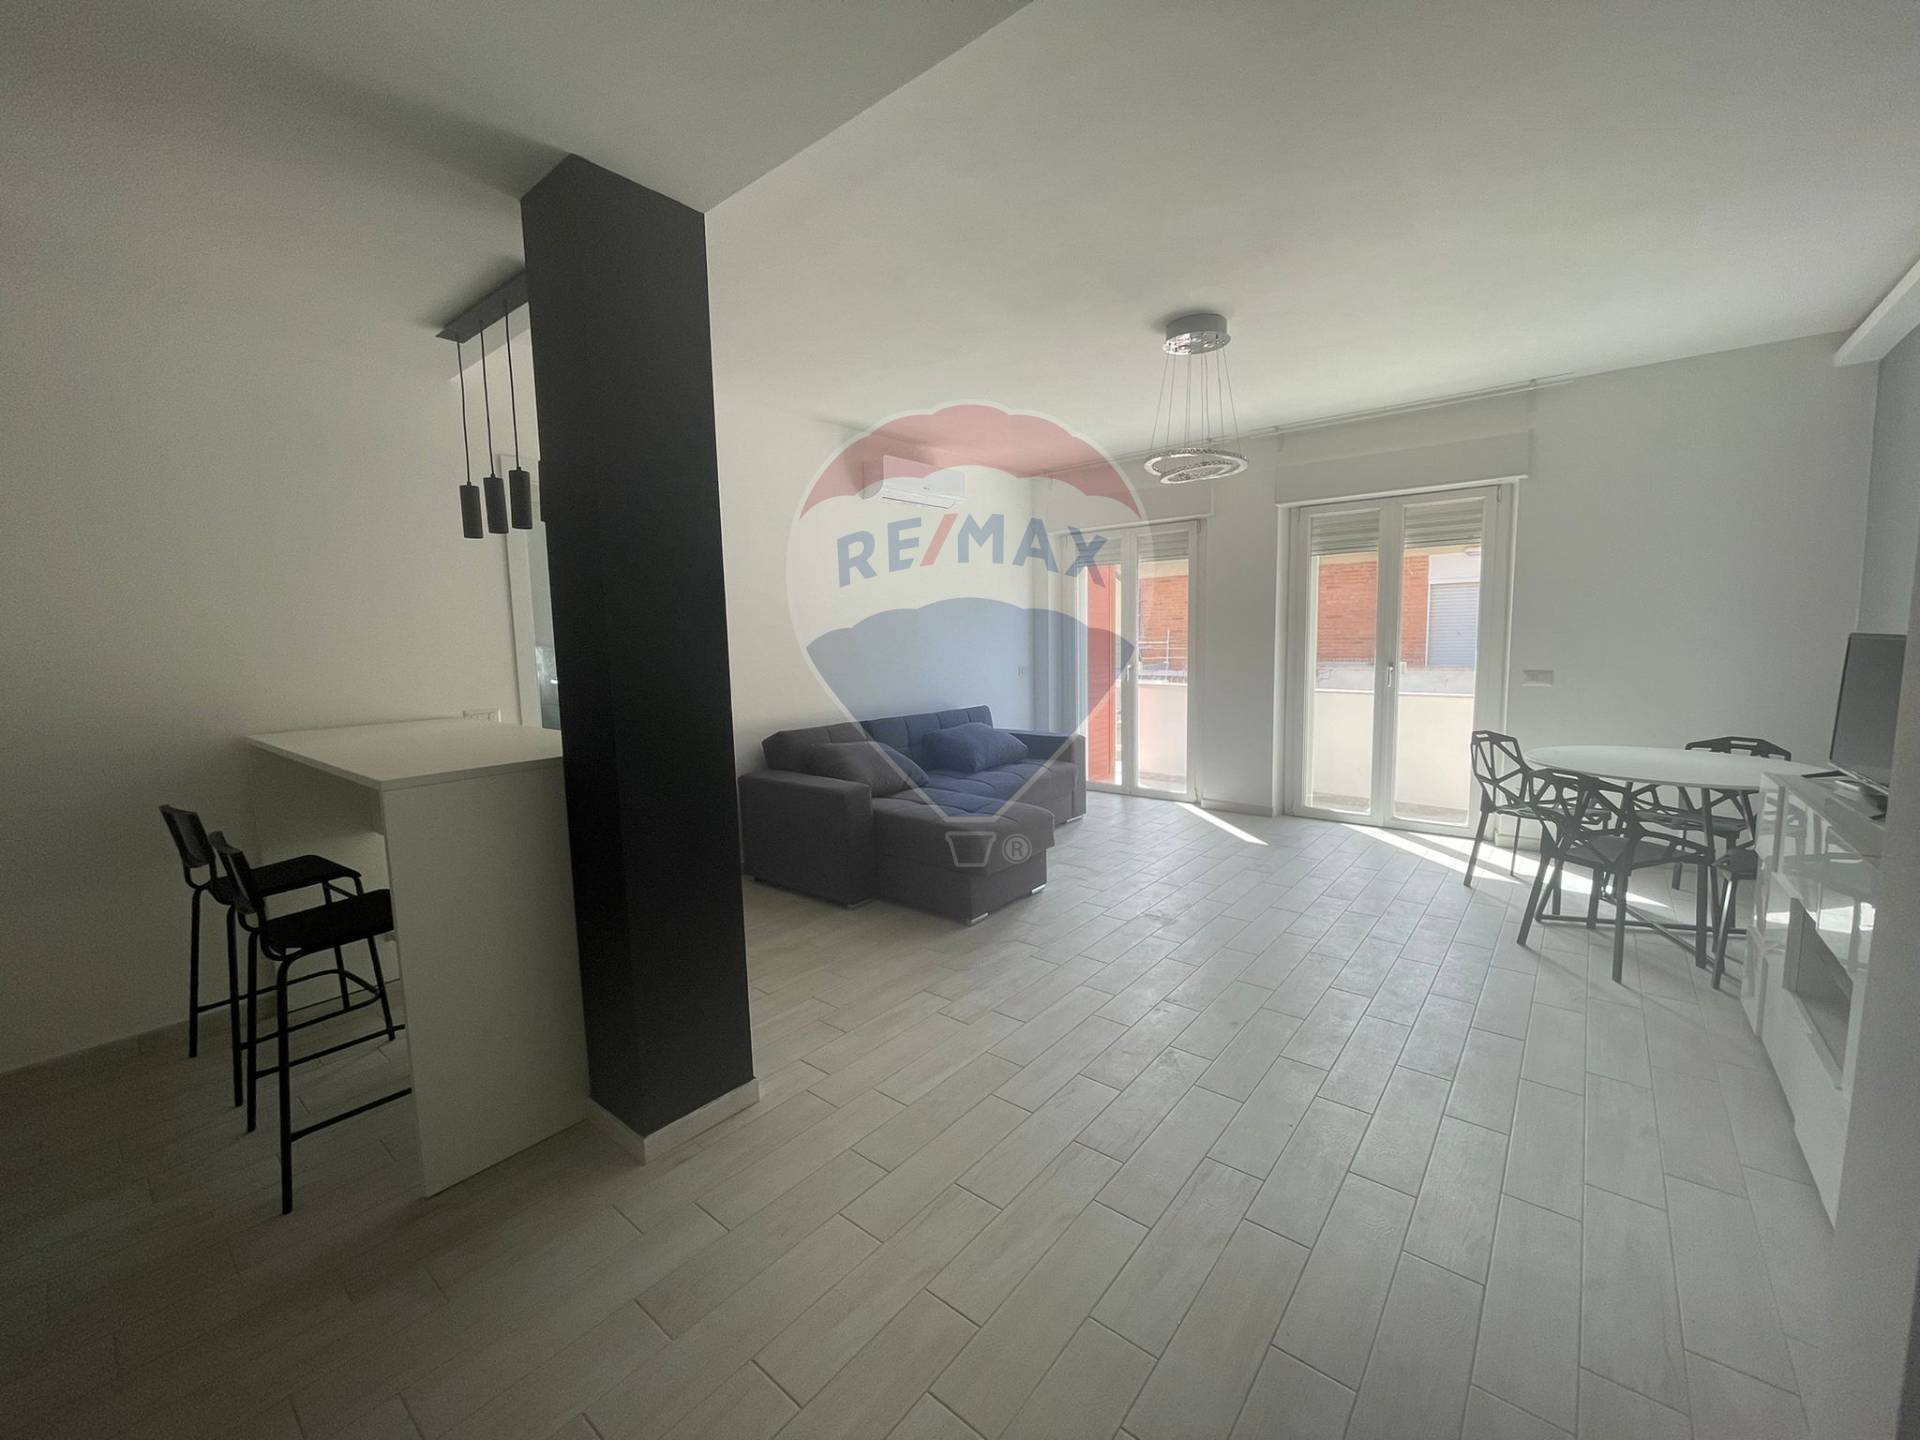 Appartamento in affitto a Orbetello, 3 locali, prezzo € 1.000 | CambioCasa.it